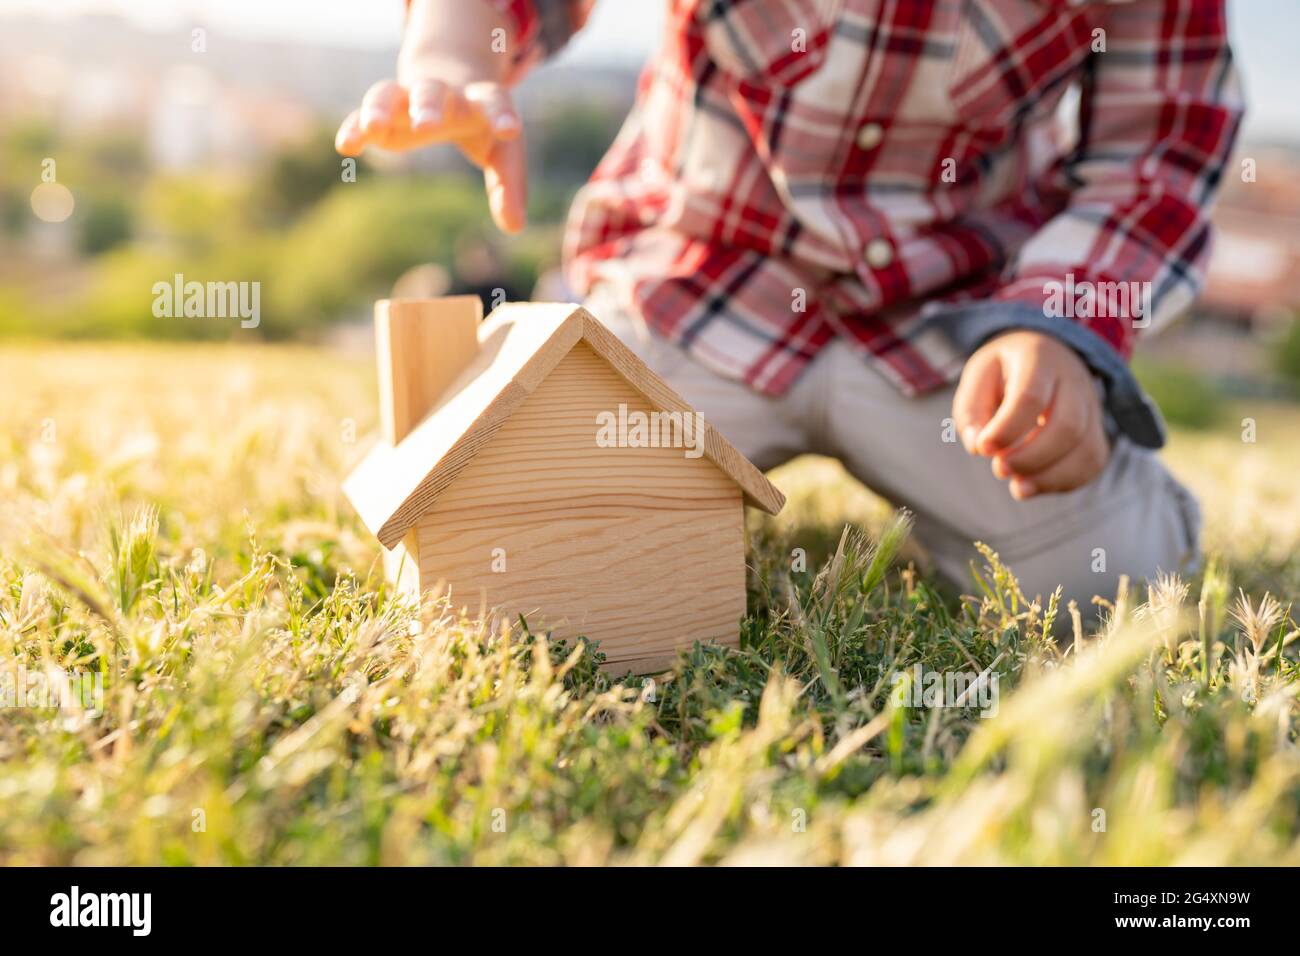 Junge spielt mit Holzhausspielzeug auf Gras an sonnigen Tagen Stockfoto